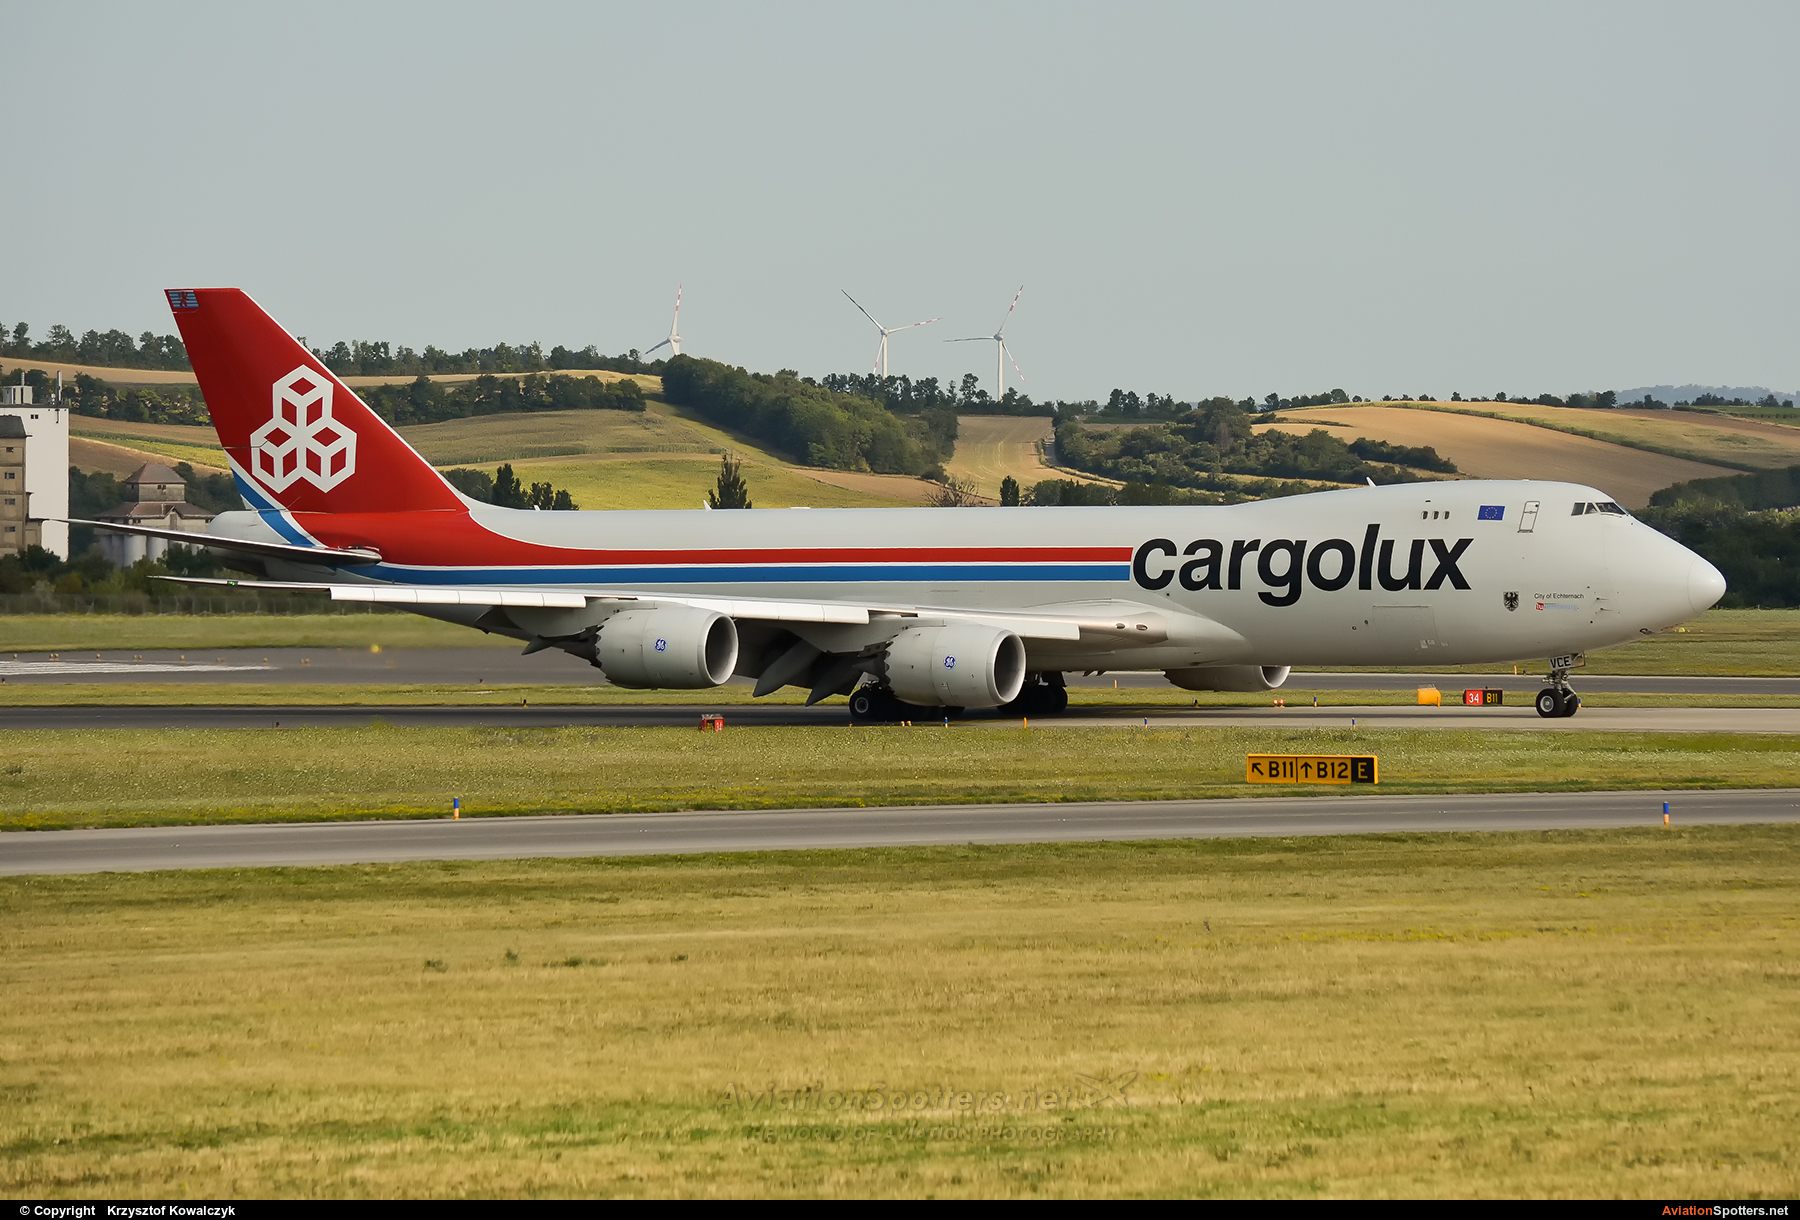 Cargolux  -  747-8F  (LX-VCE) By Krzysztof Kowalczyk (Krzysztof Kowalczyk)